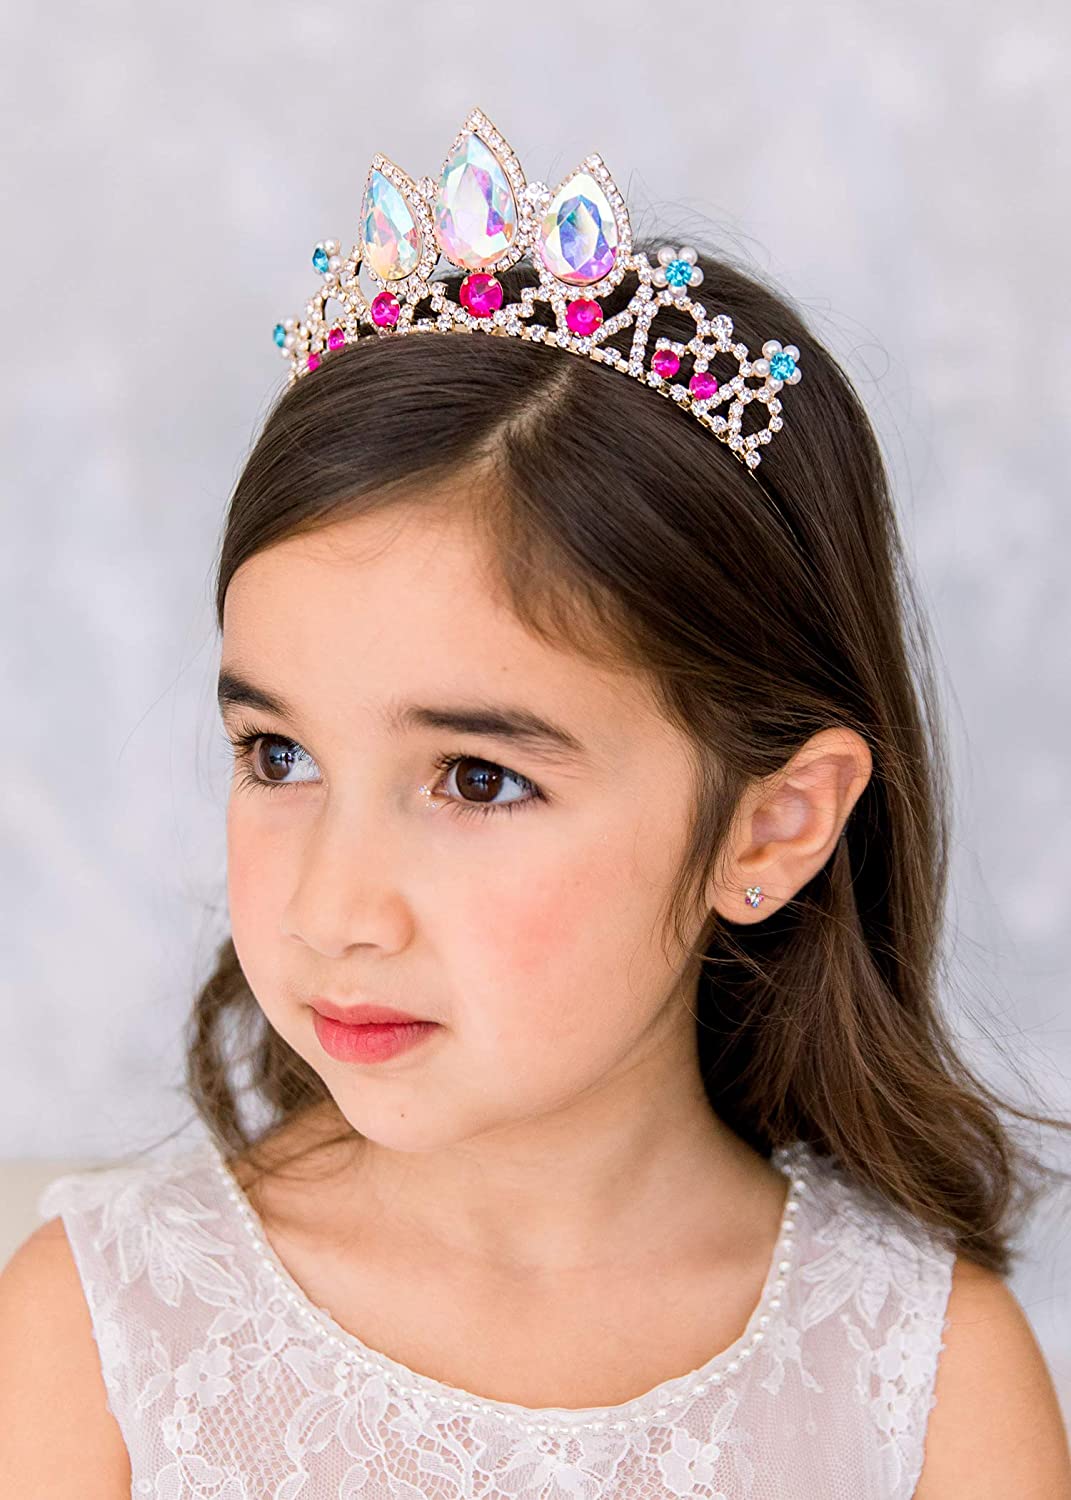 Princess Tiaras for Little Girls - Uporpor